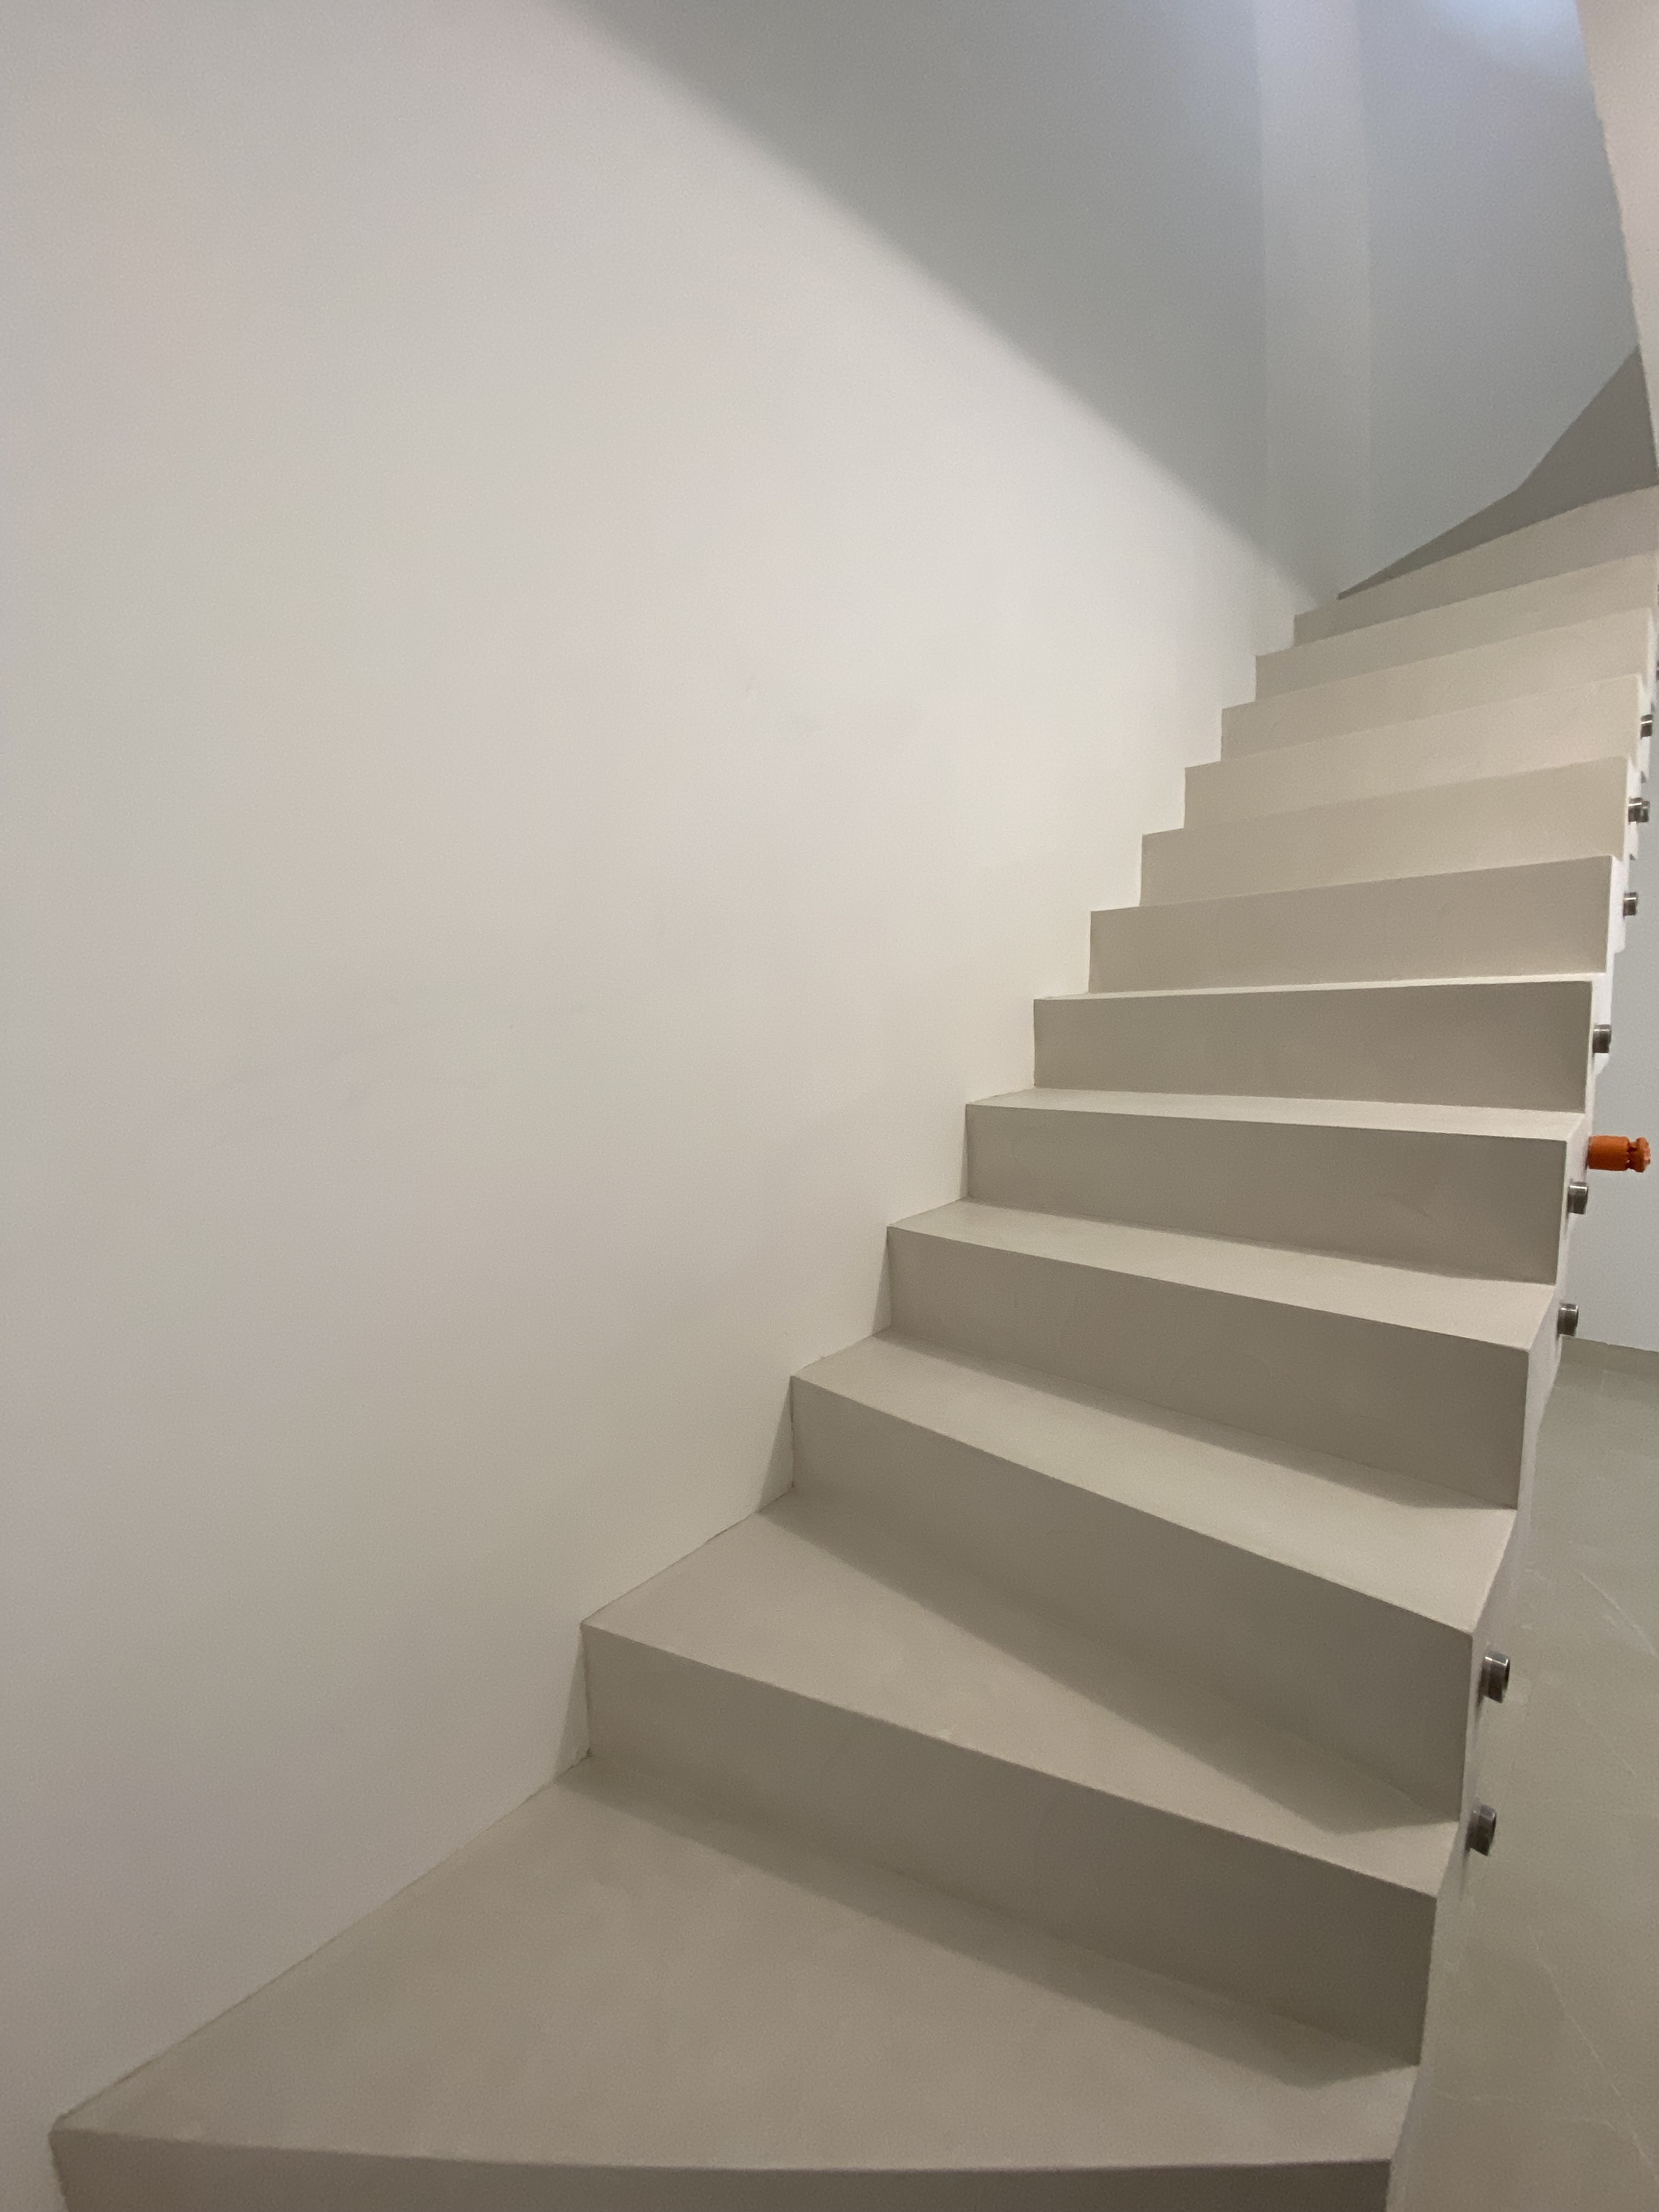 Vue de face d'un escalier avec palier de départ, pour un particulier, dans une maison individuelle à Calais.